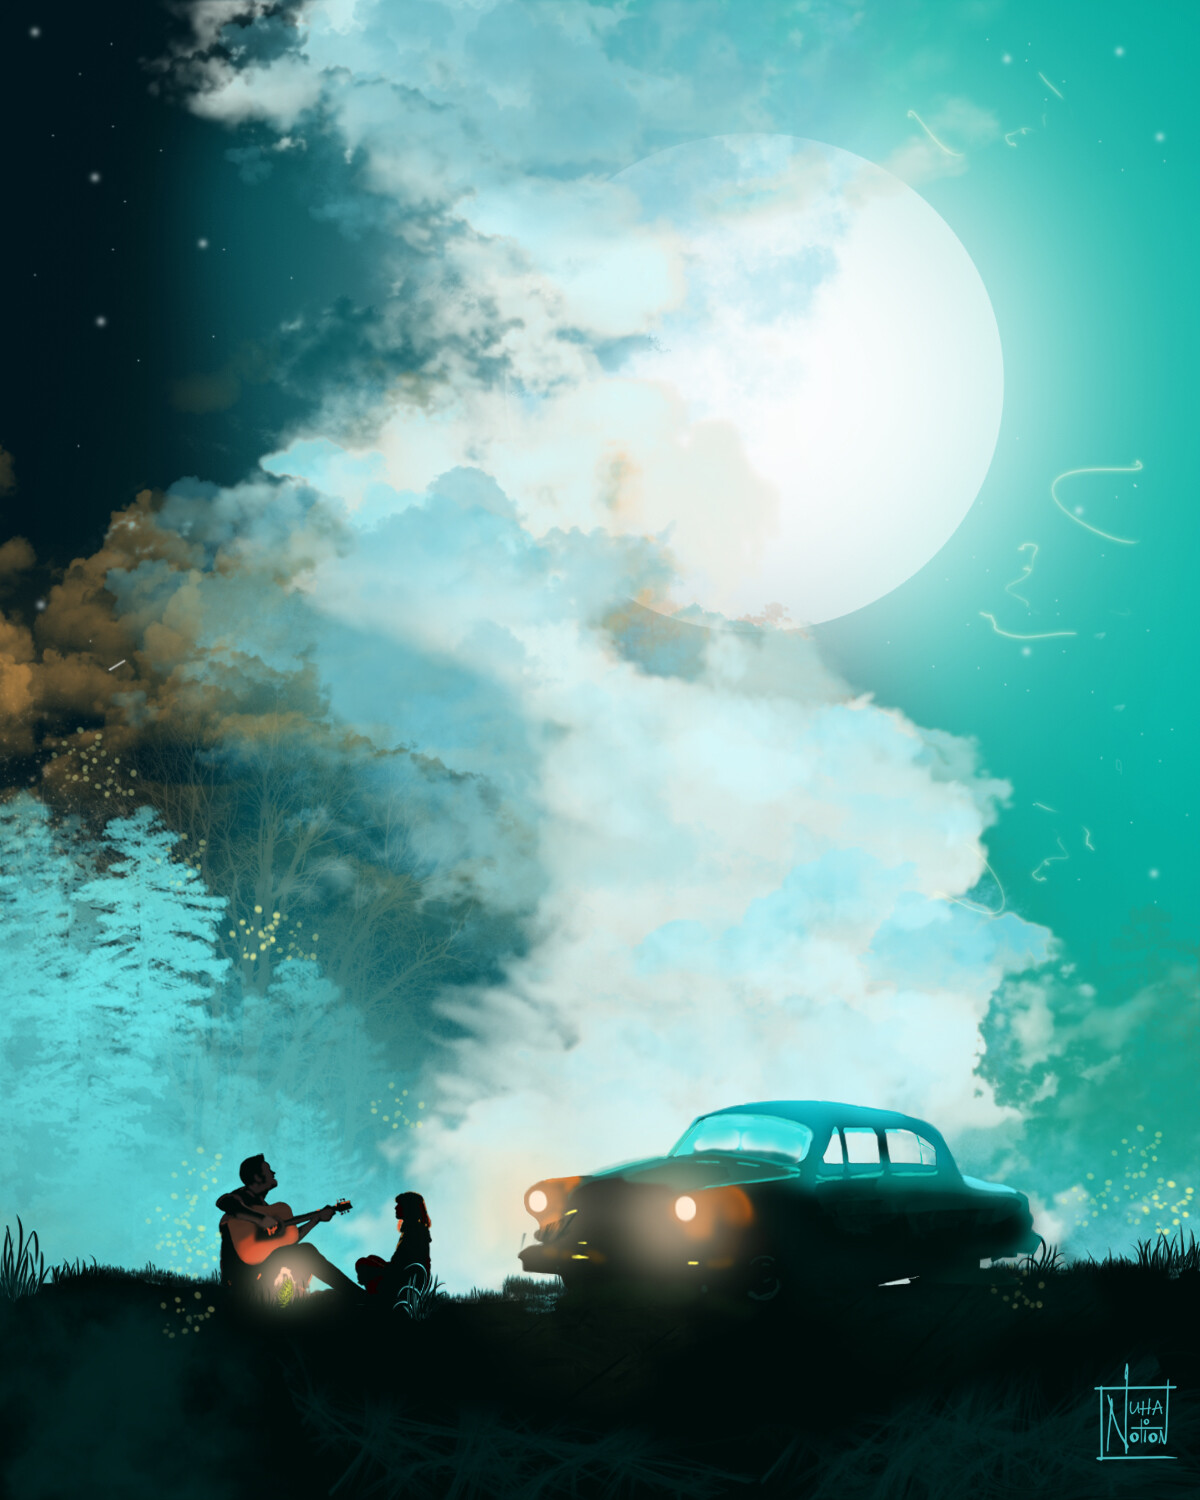 Фото Парень играет на гитаре перед девушкой, оба сидят поодаль от авто под облачным небом с полной луной, by Nuhanotion